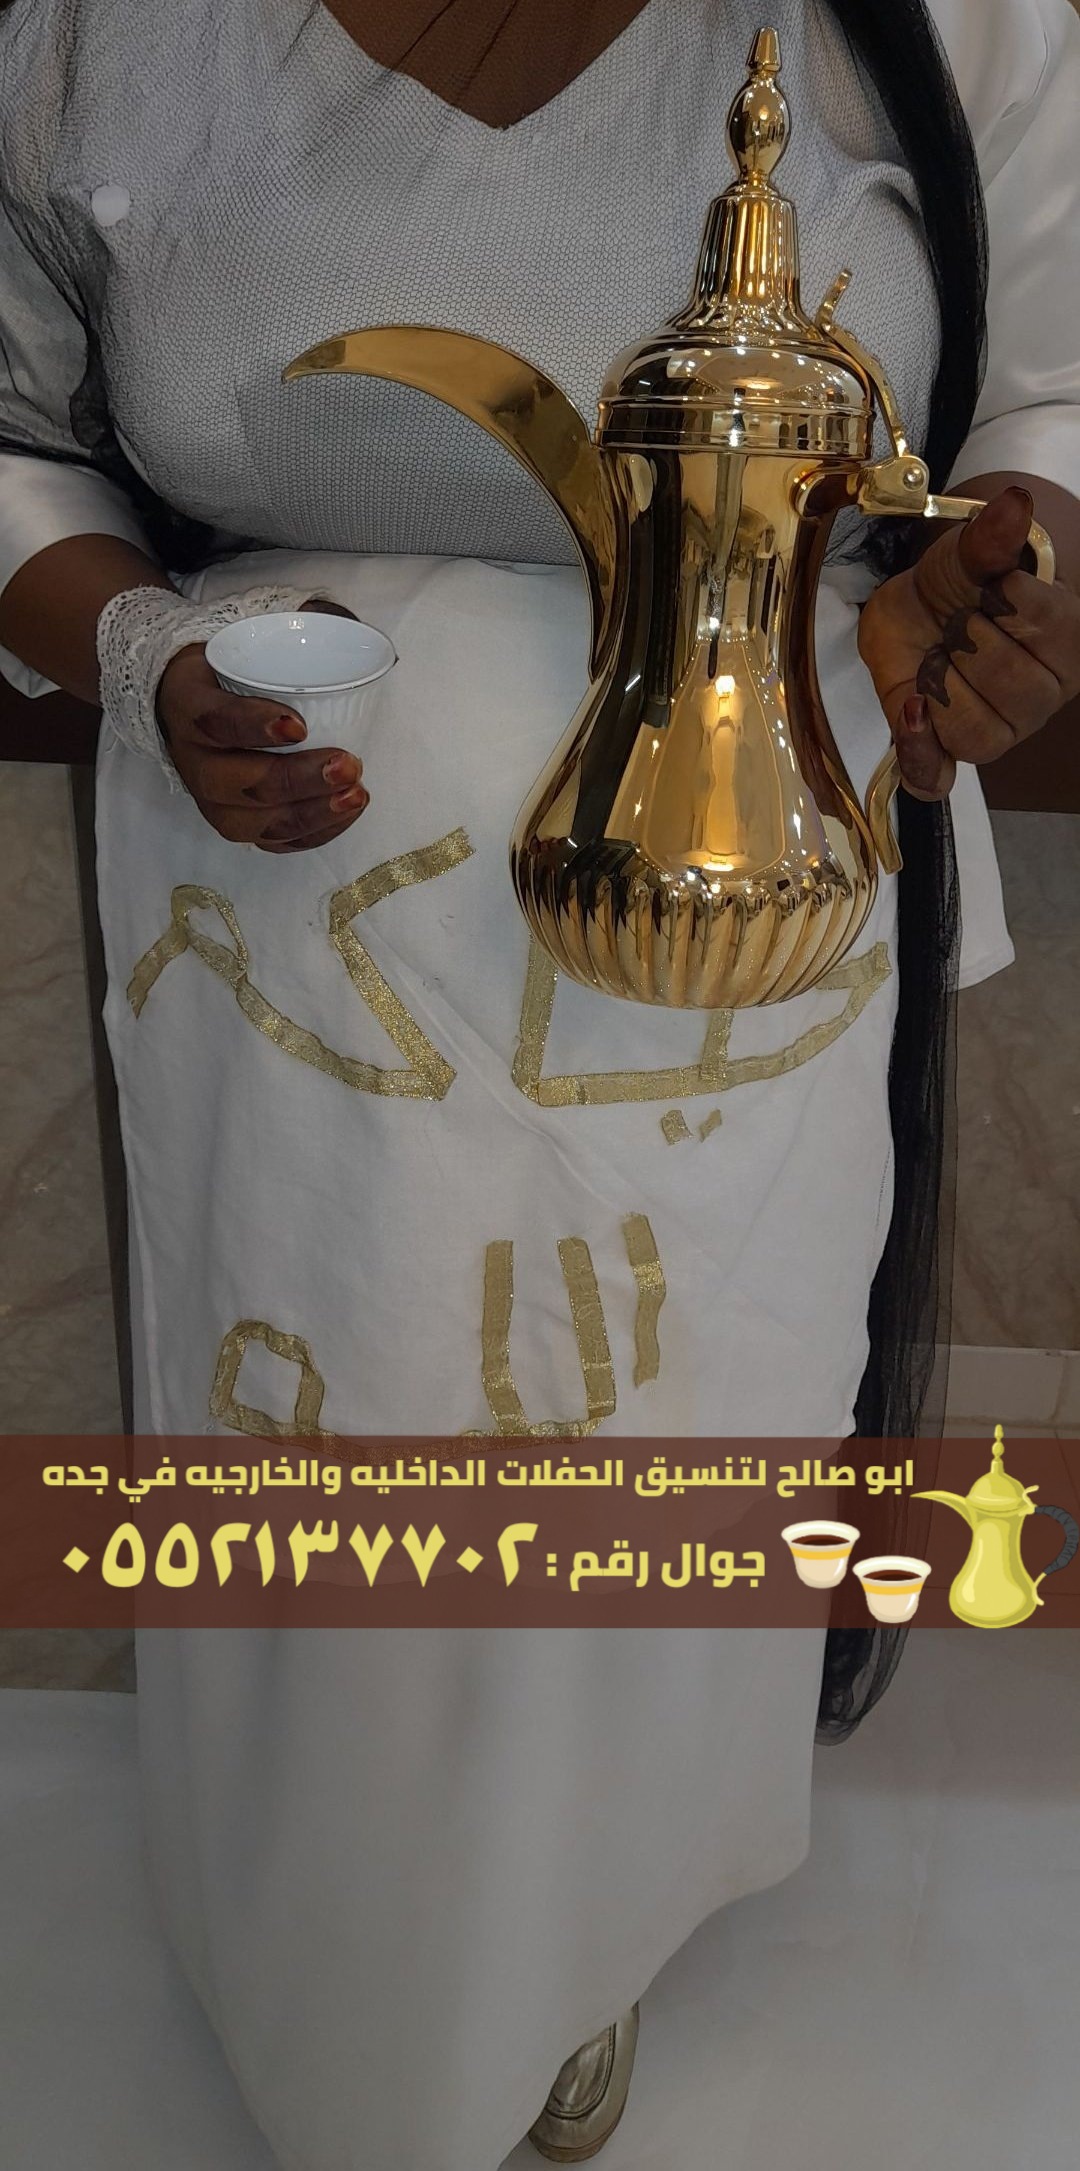 مباشرات قهوة و صبابات في جدة , 0552137702 P_2379jzzlt2